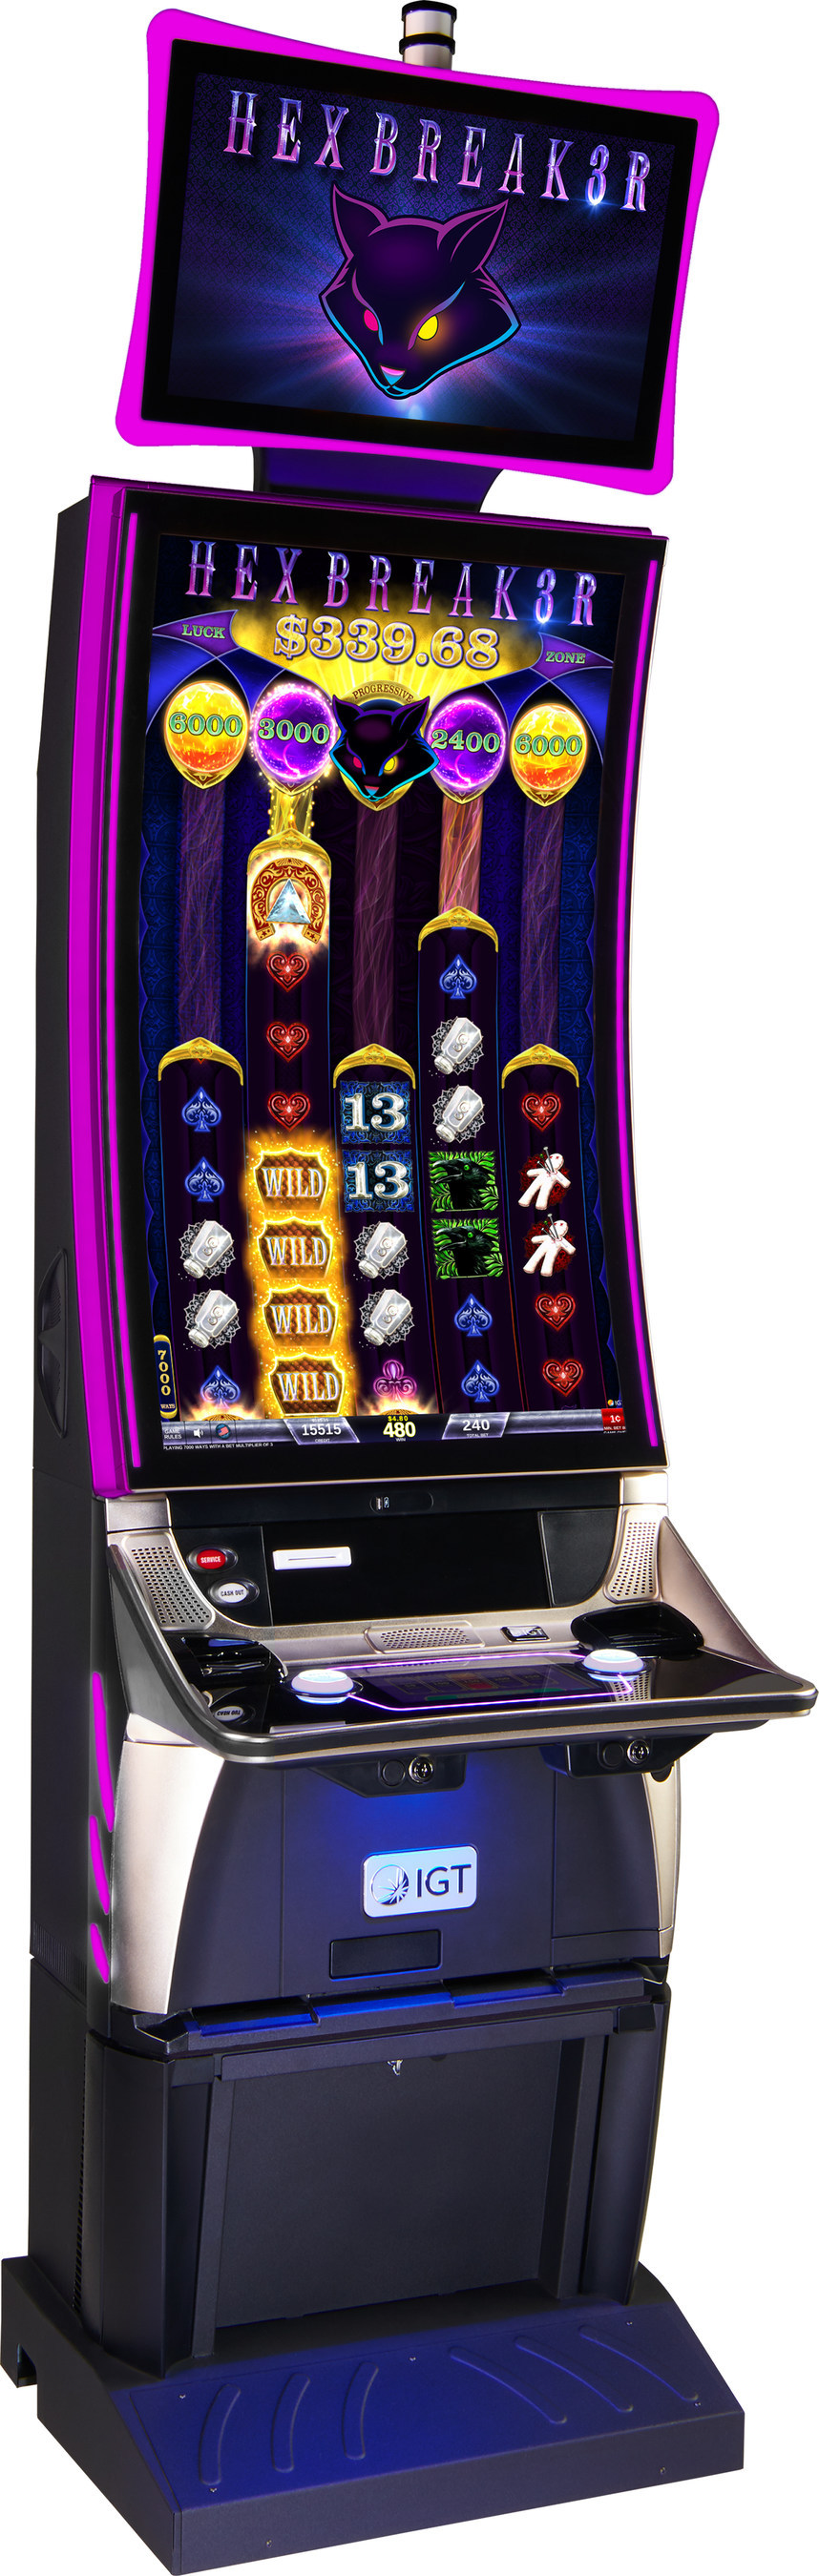 Hex breaker casino games